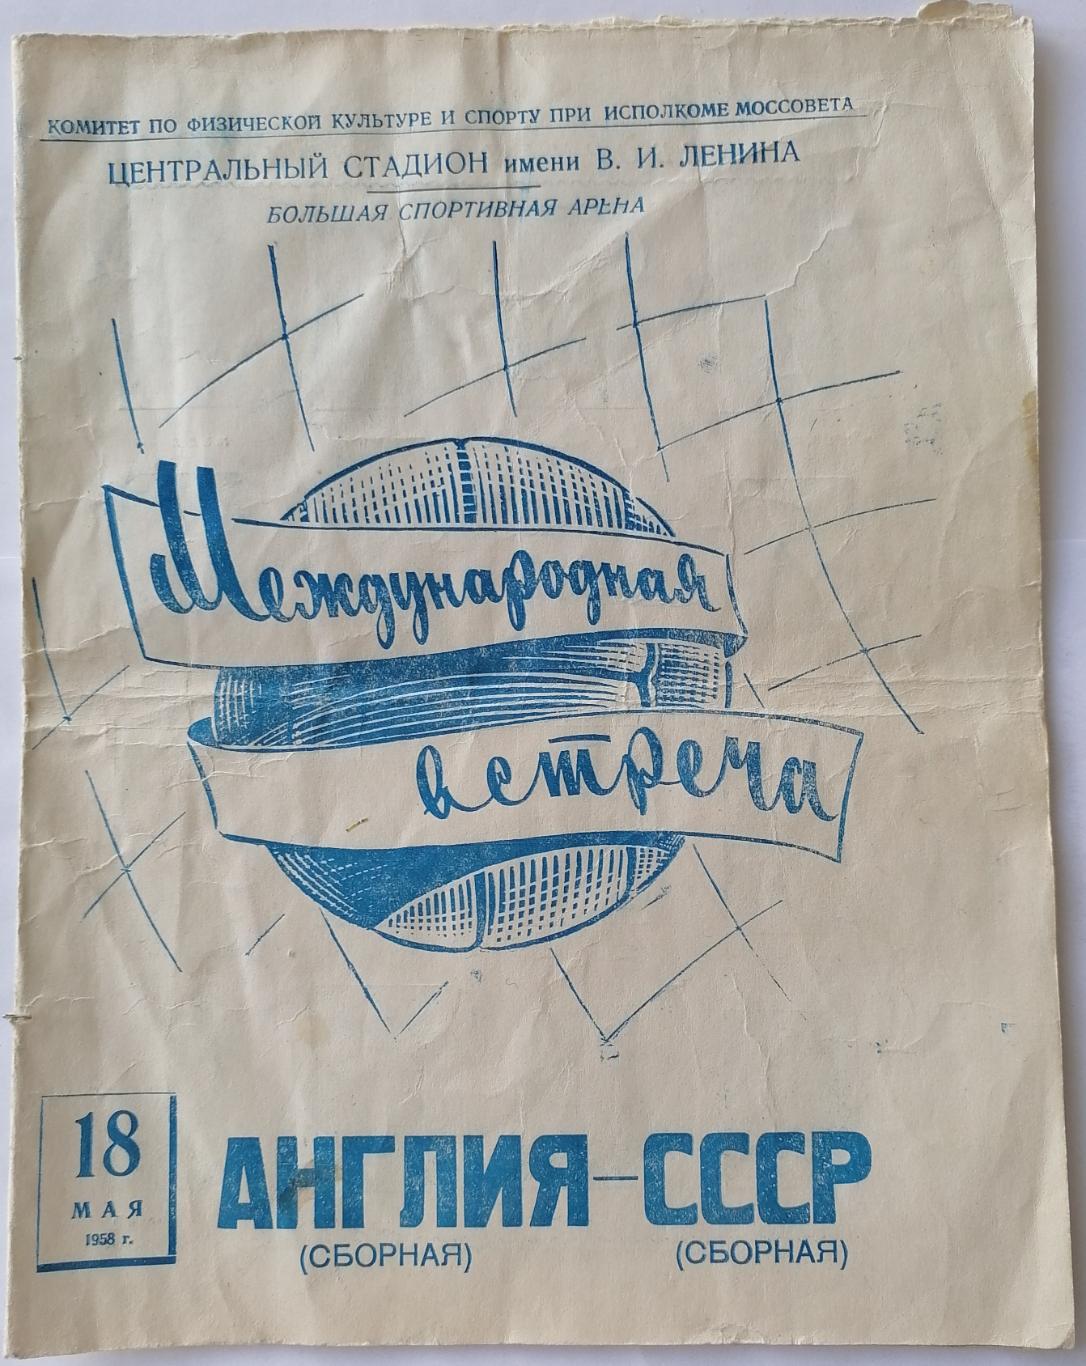 Сборная СССР - АНГЛИЯ 1958 официальная программа